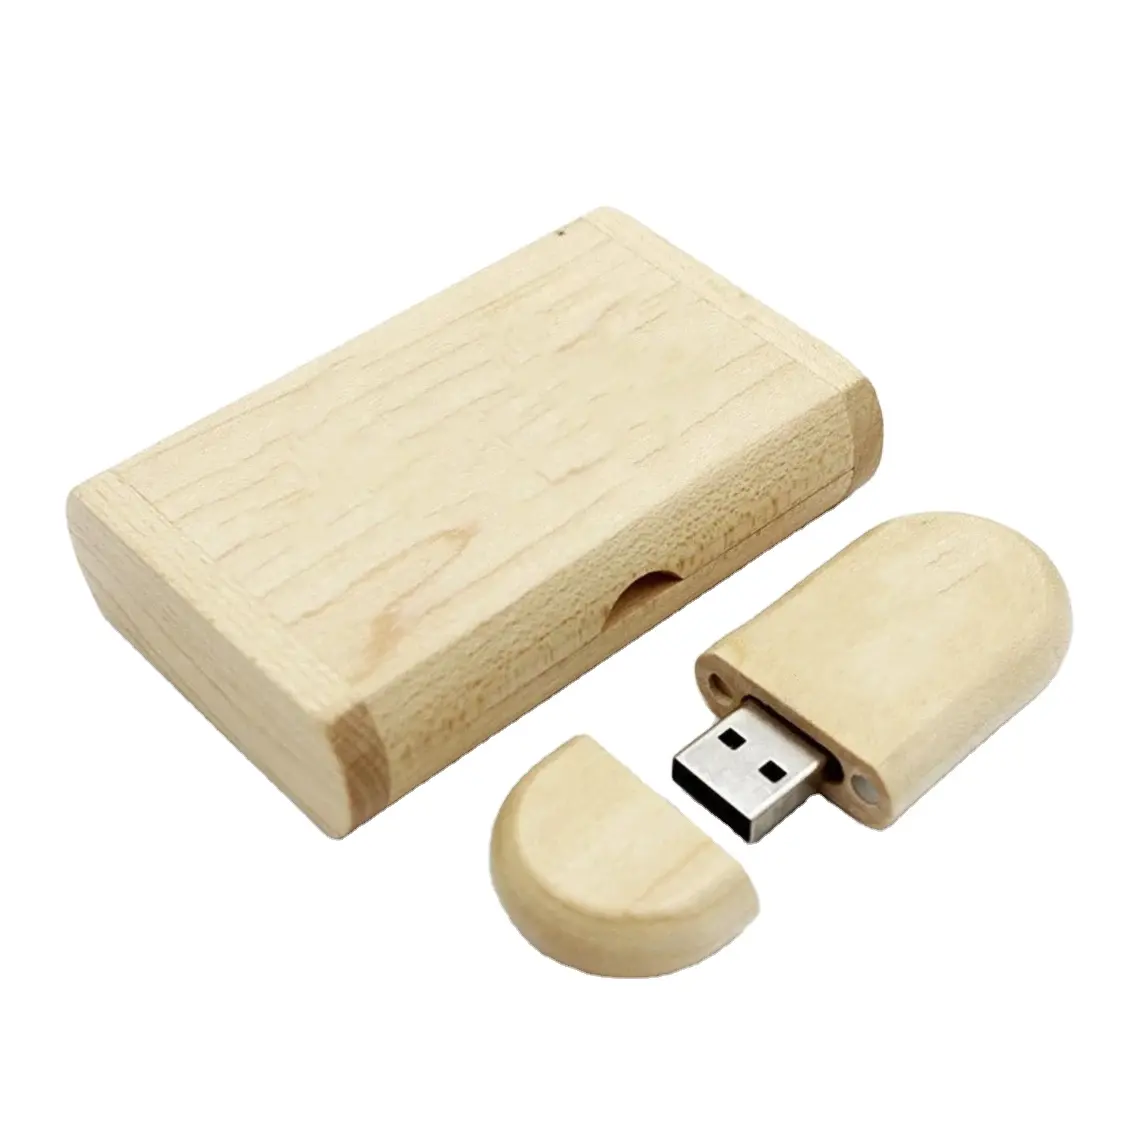 Lembranças de Casamento Convidados Pendrive 32GB 64GB 16GB Thumbdrive Wood USB Flash Drive 3.0 de madeira usb flashdrive